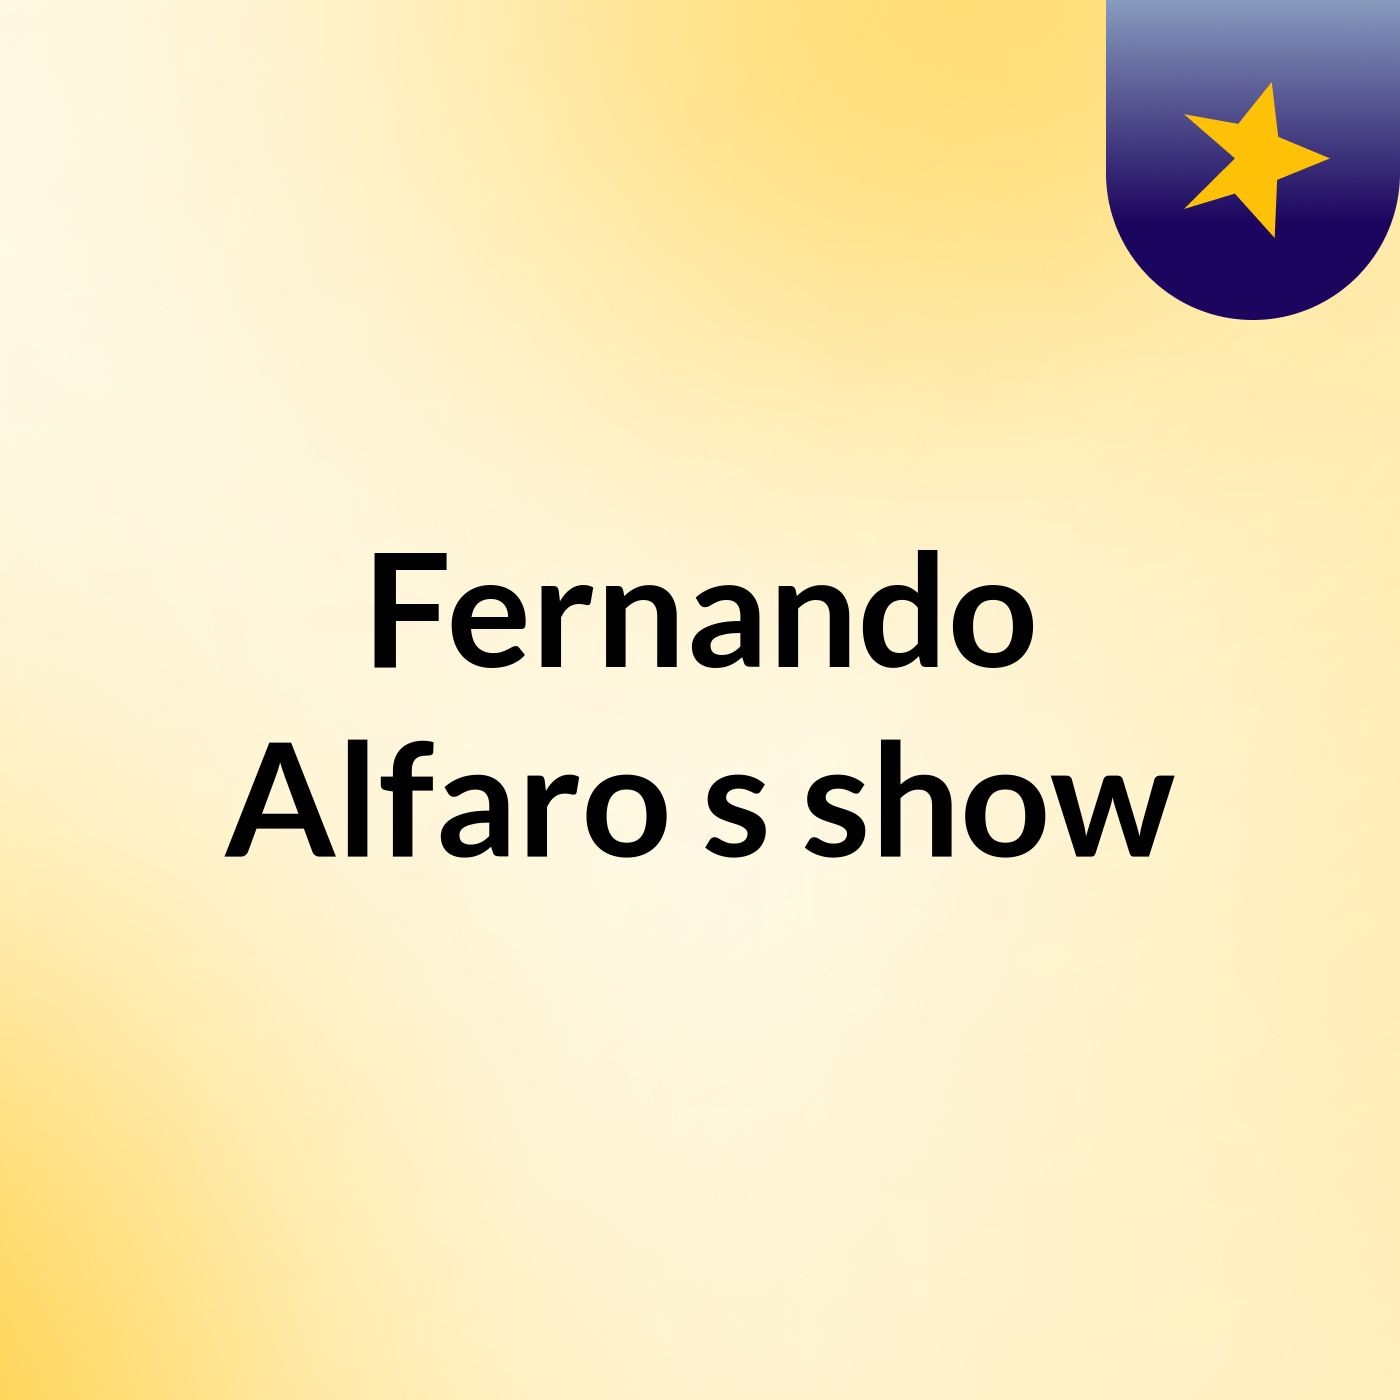 Fernando Alfaro's show